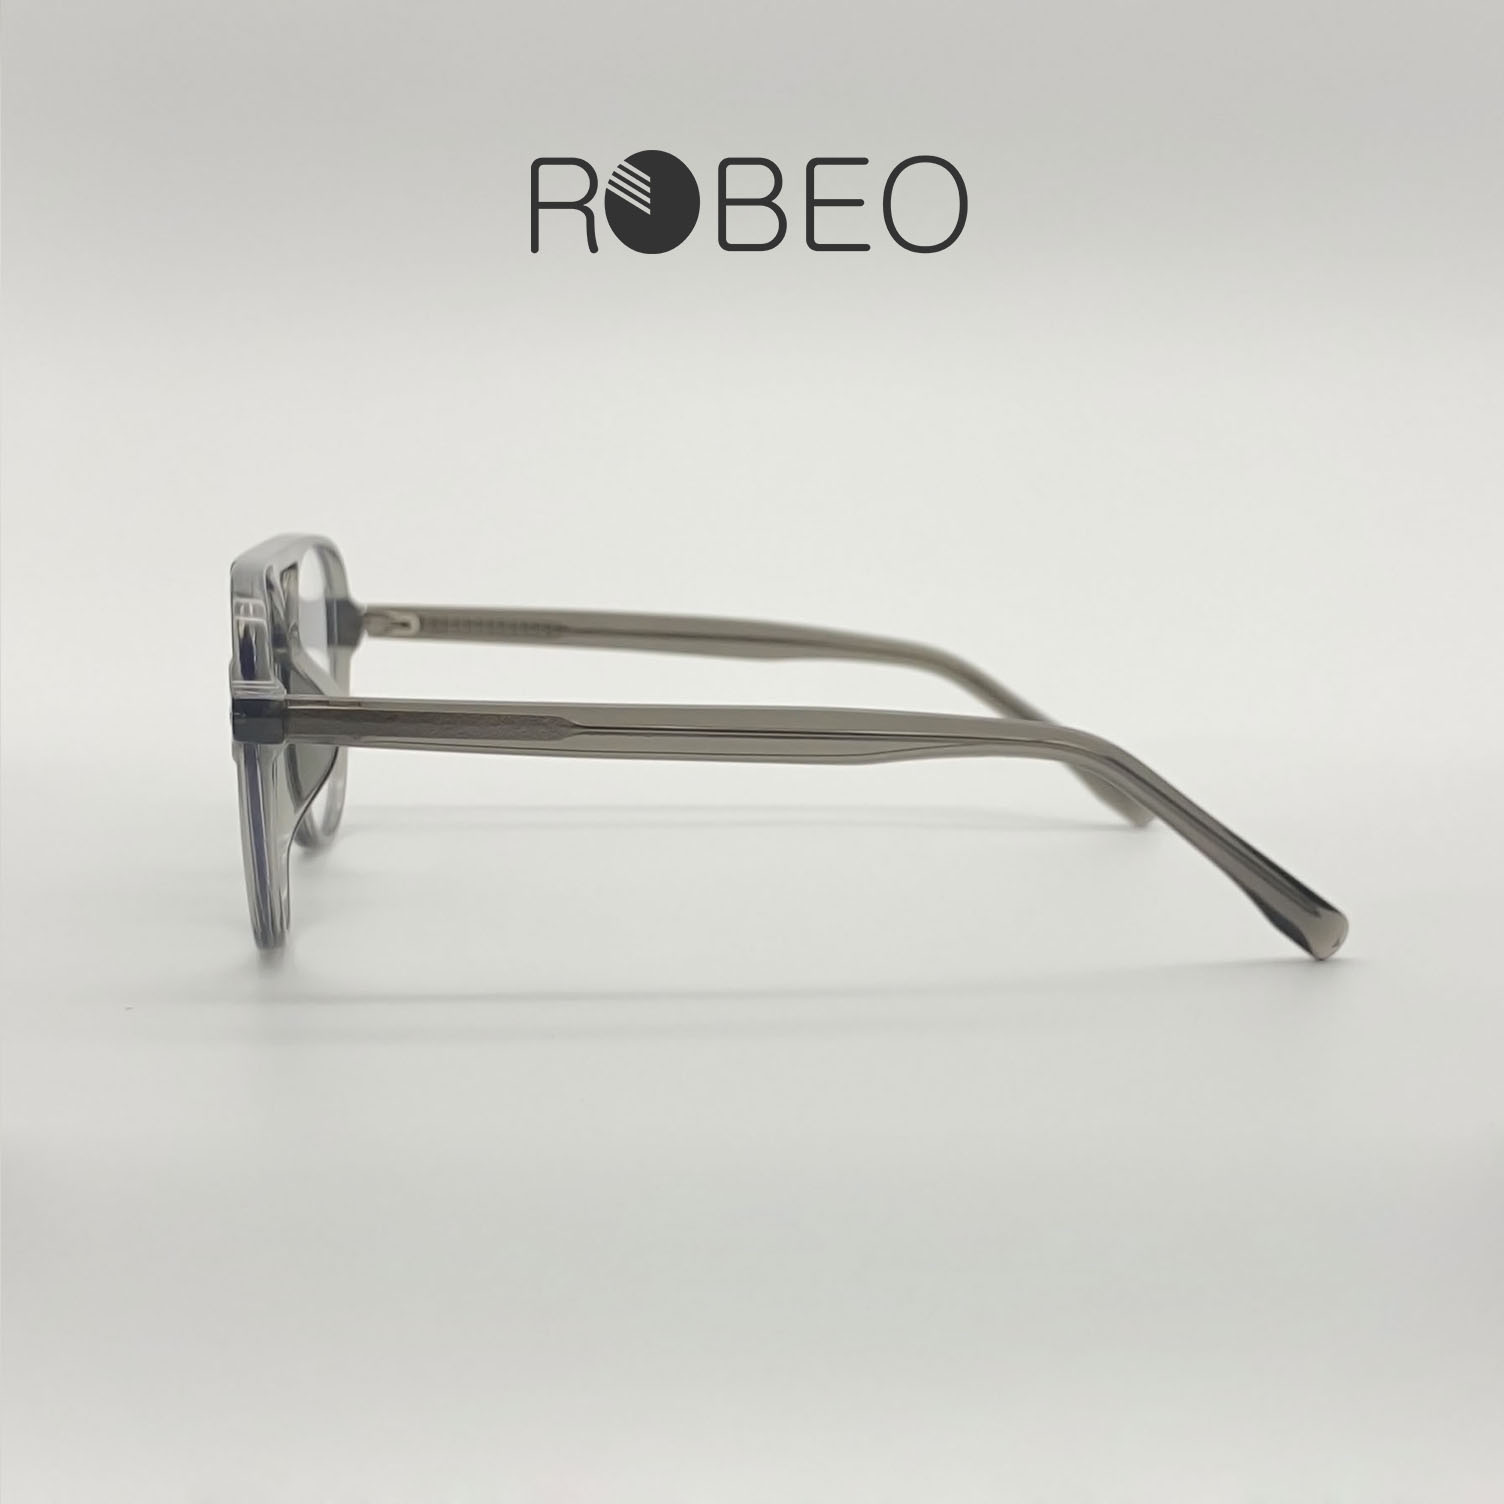 Gọng kính cận nam nữ ROBEO R0429, kiểu dáng chuồn chuồn mắt chống ánh sáng xanh - Fullbox